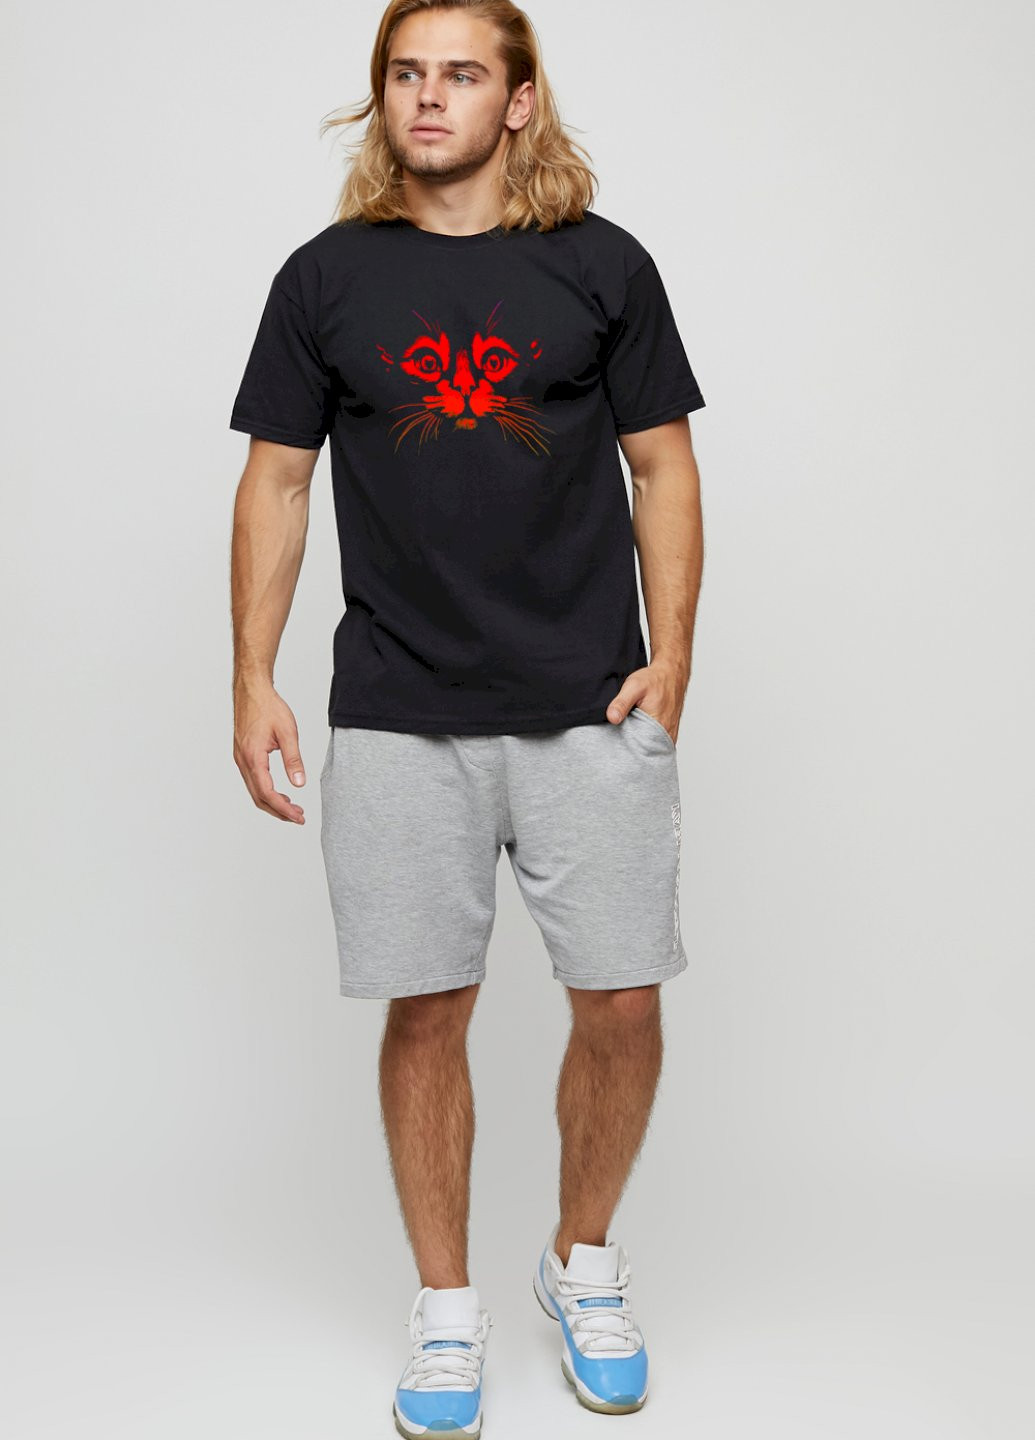 Черная футболка мужская basic /air print/ YAPPI